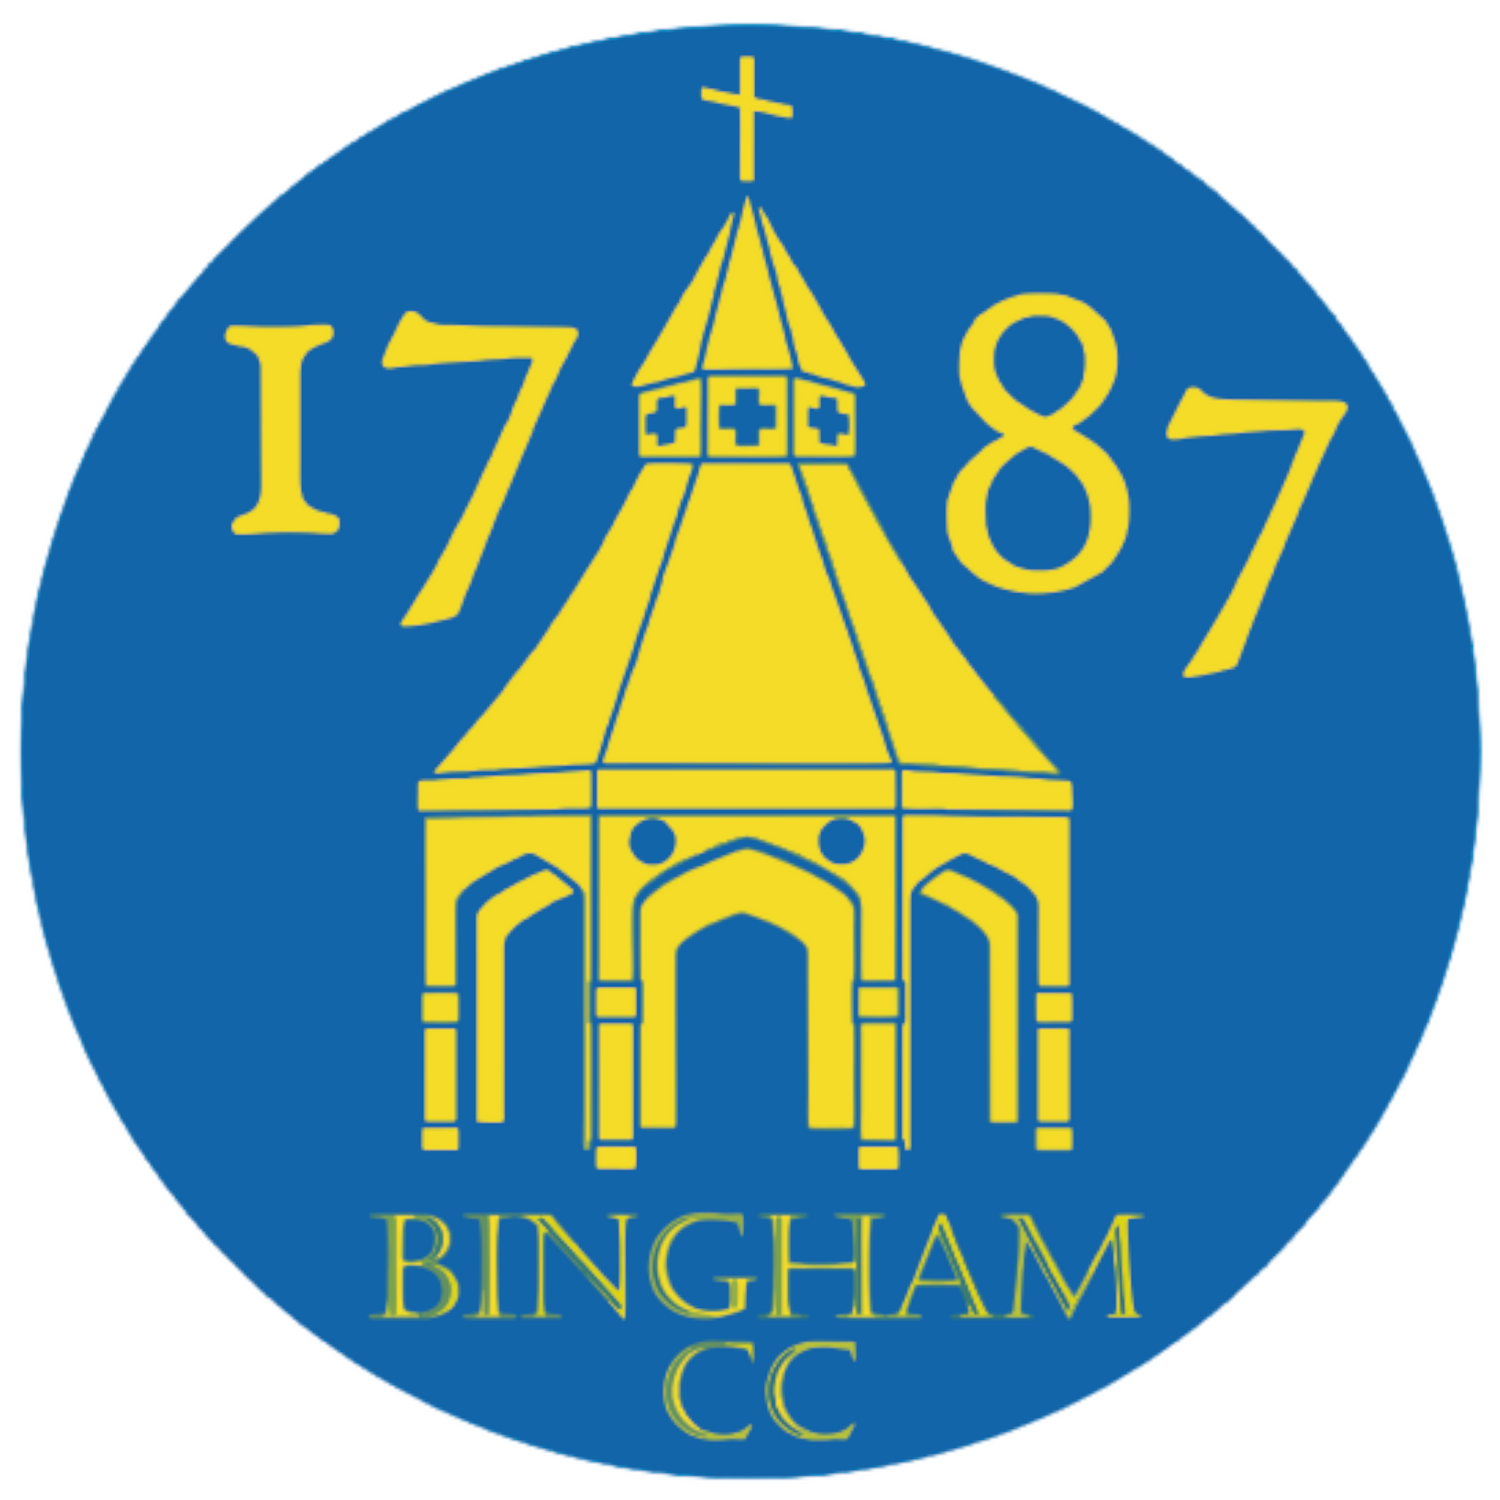 Bingham CC